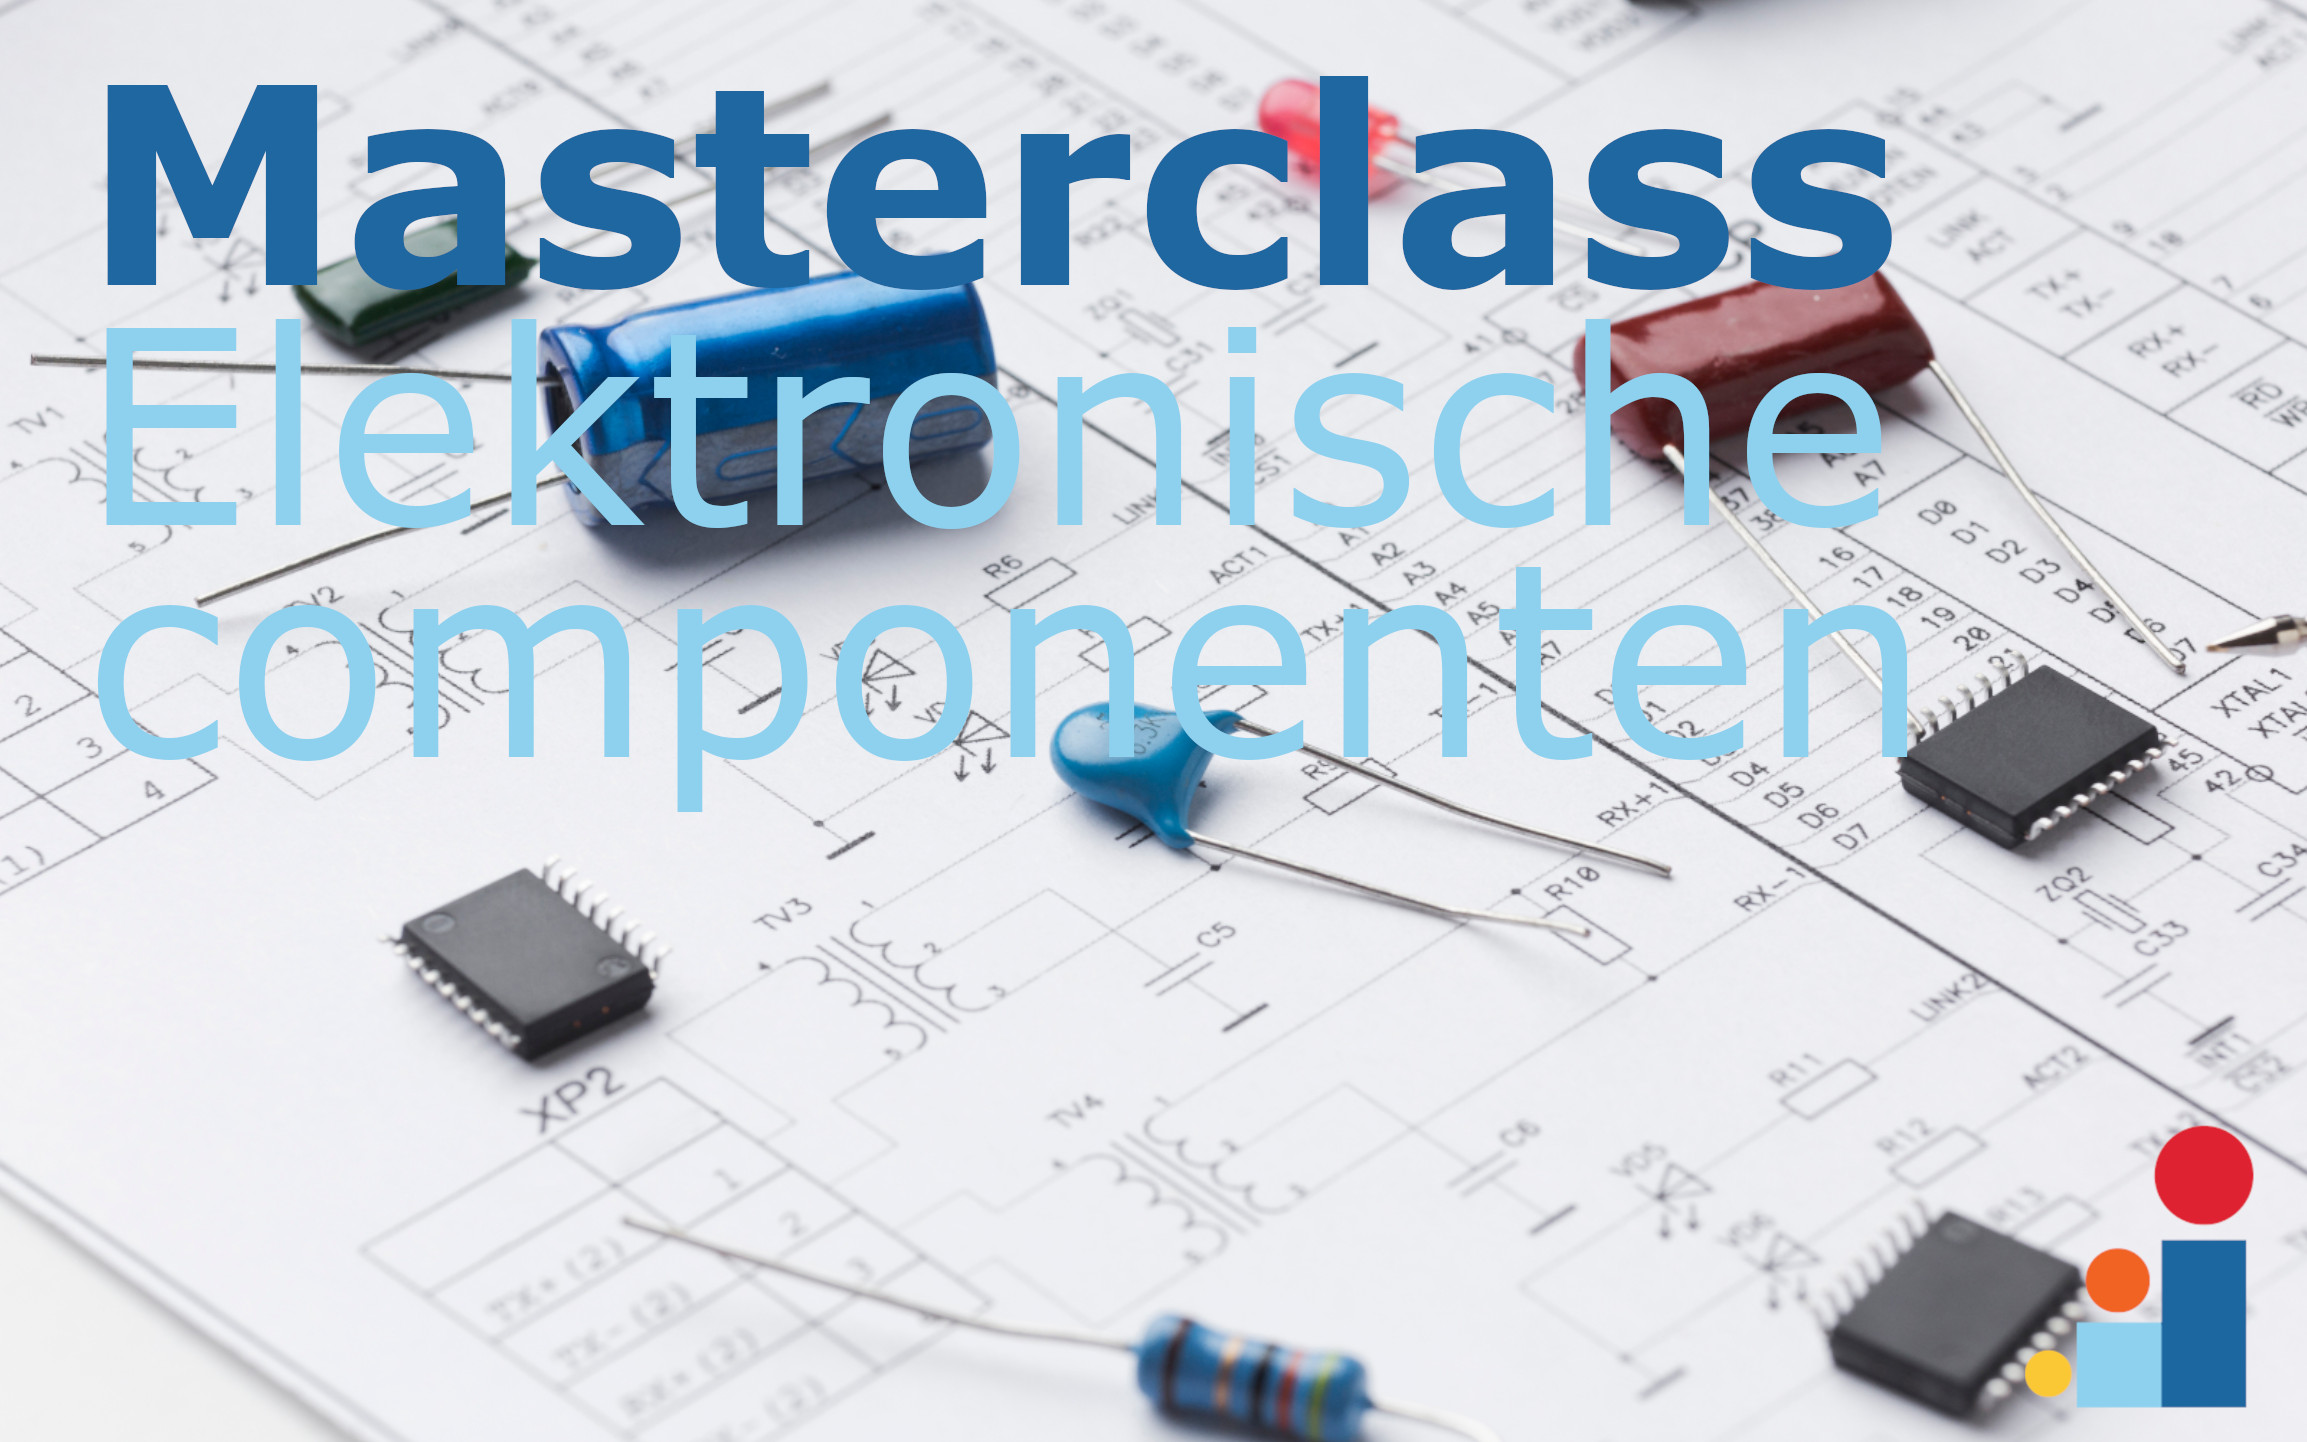 masterclass-elektronische-componenten-b